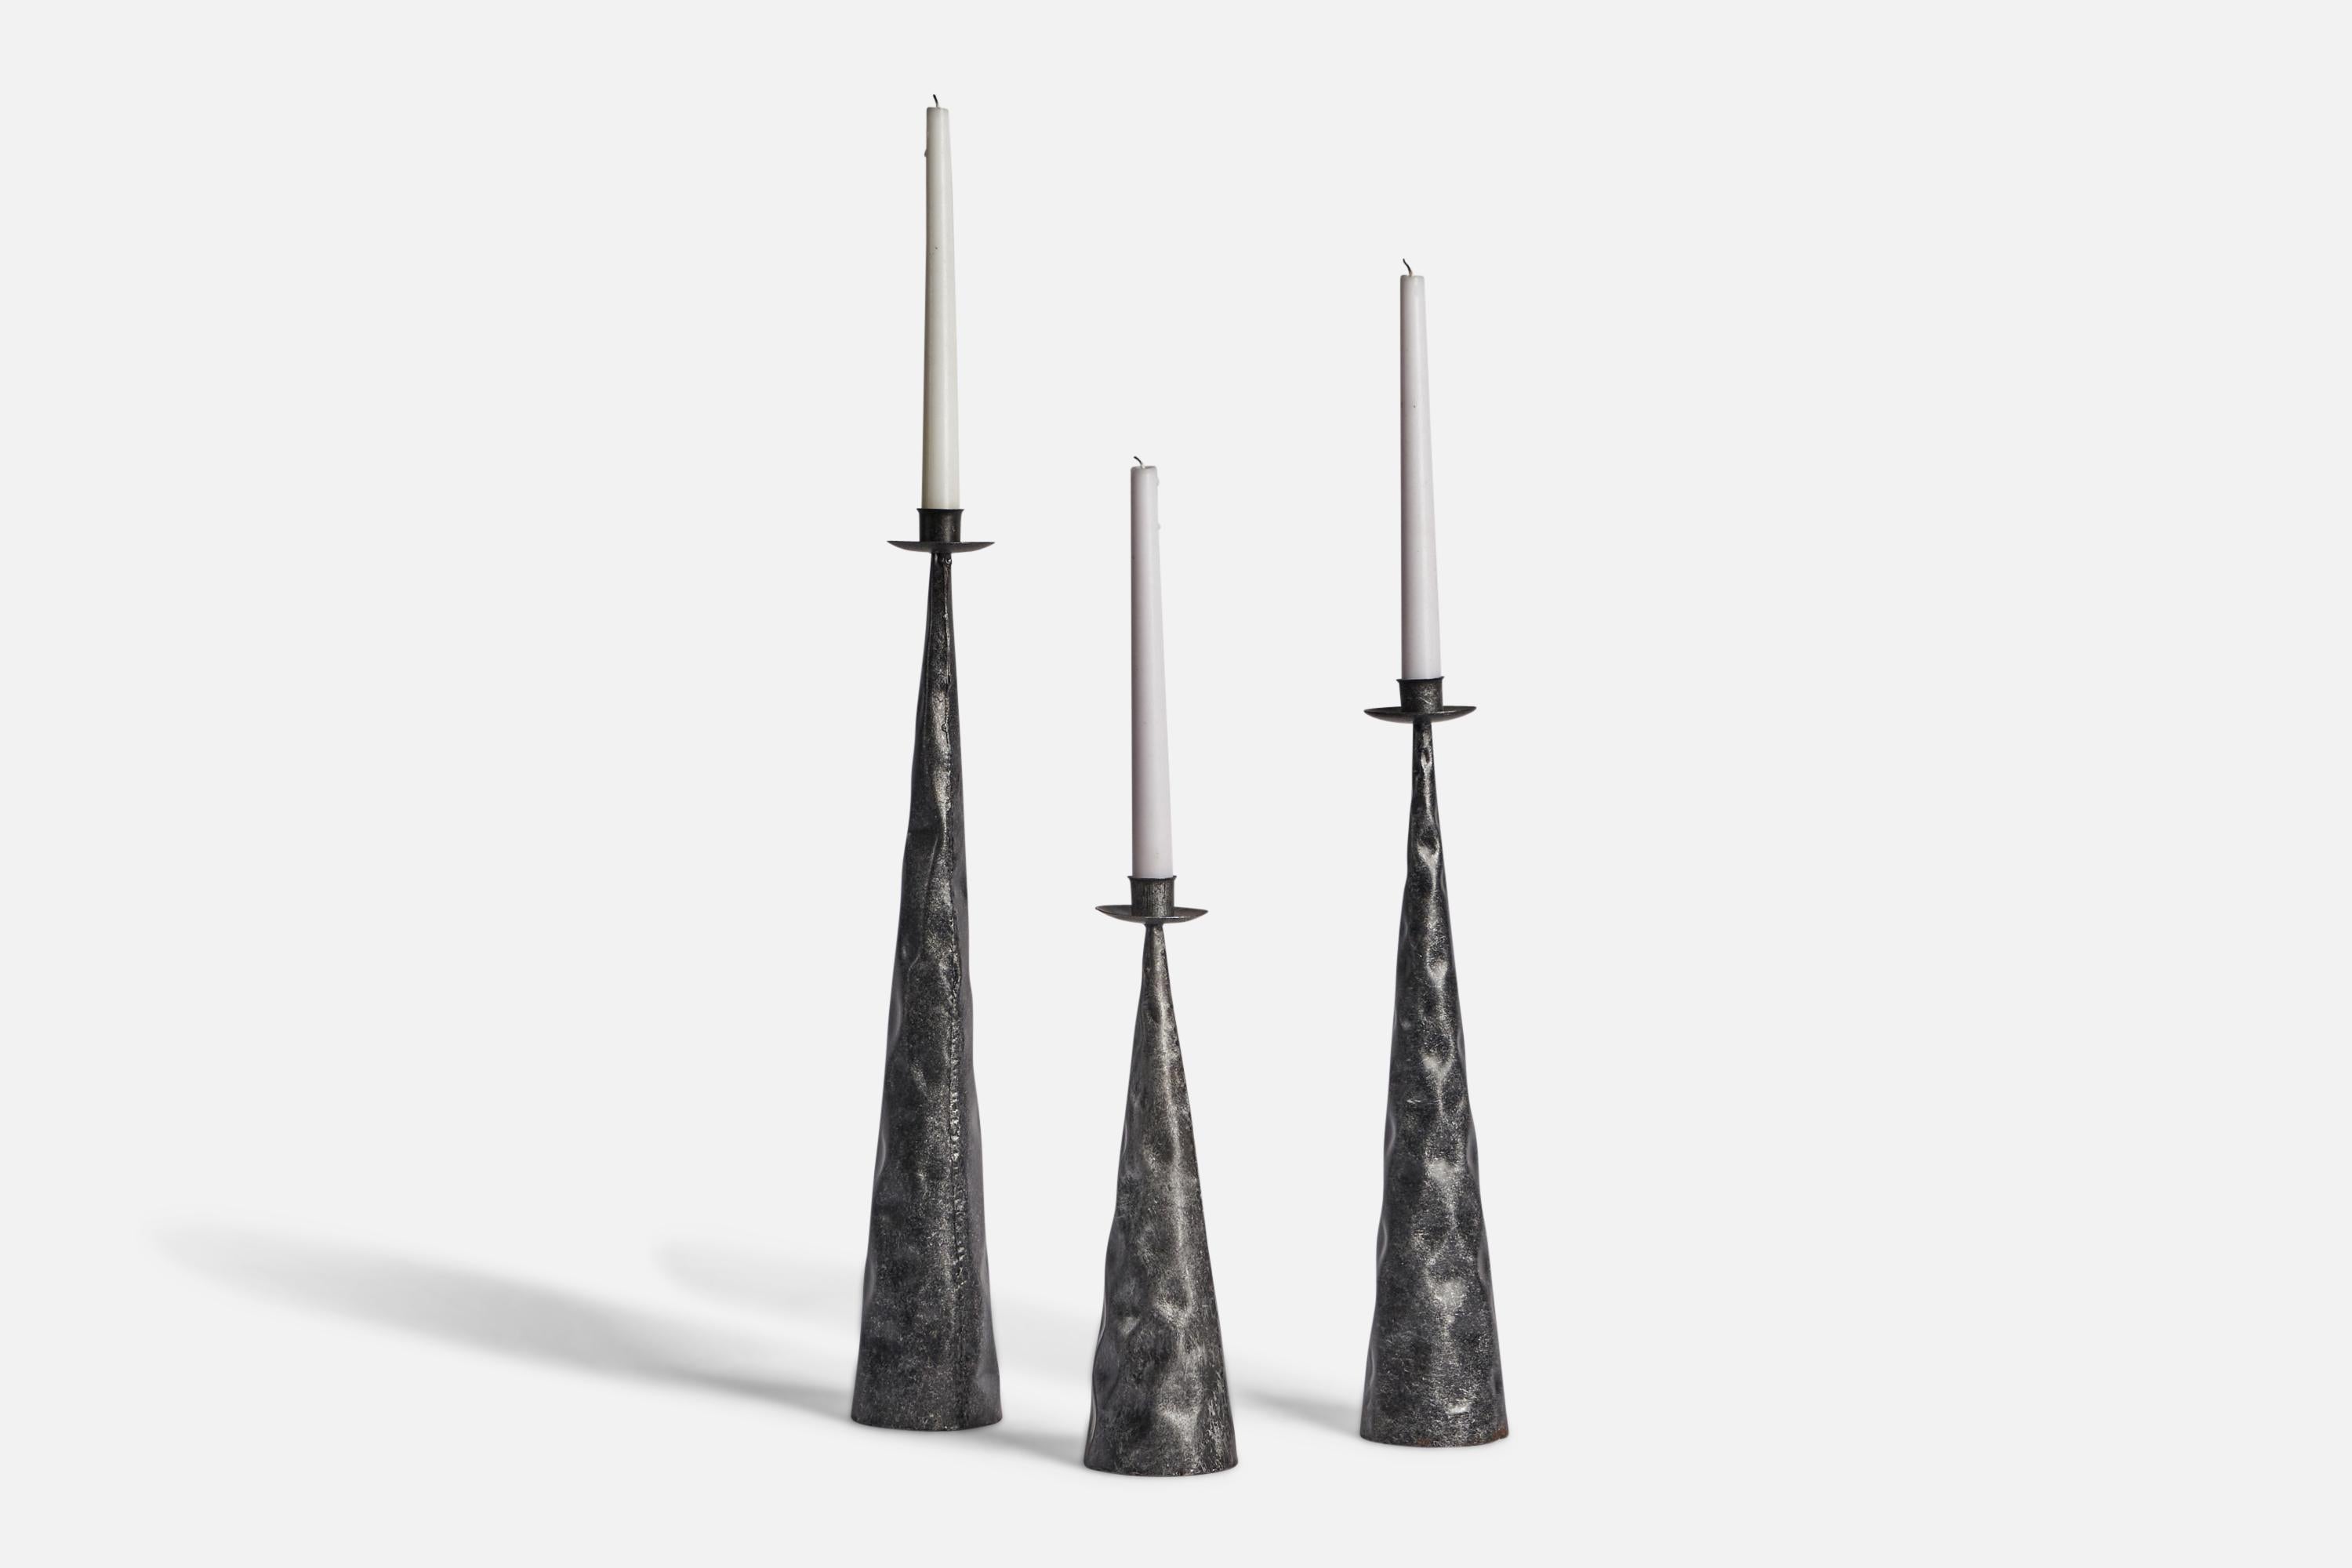 Ein Satz von drei Kerzenhaltern aus gehämmertem Eisen, entworfen und hergestellt in Schweden, ca. 1970er Jahre.

Hält Kerzen mit einem Durchmesser von 0,8